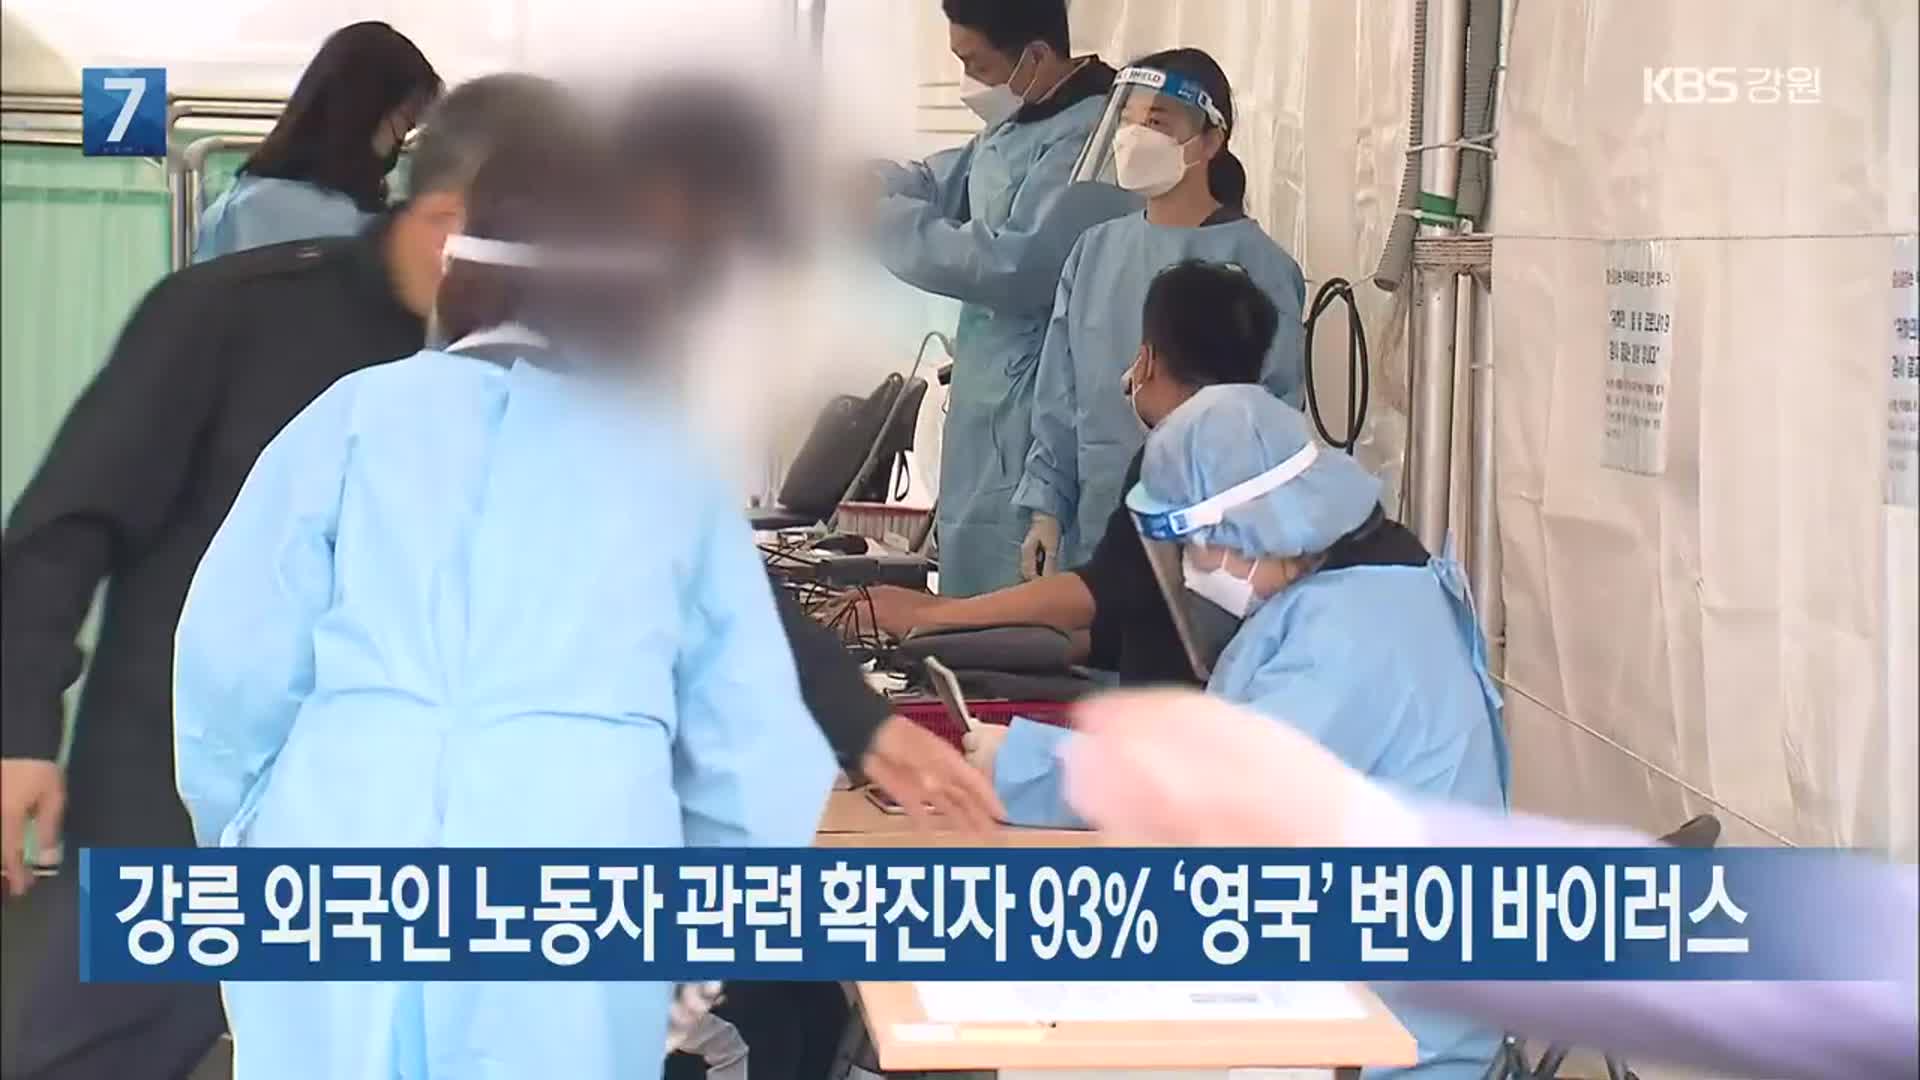 강릉 외국인 노동자 관련 확진자 93% ‘영국’ 변이 바이러스